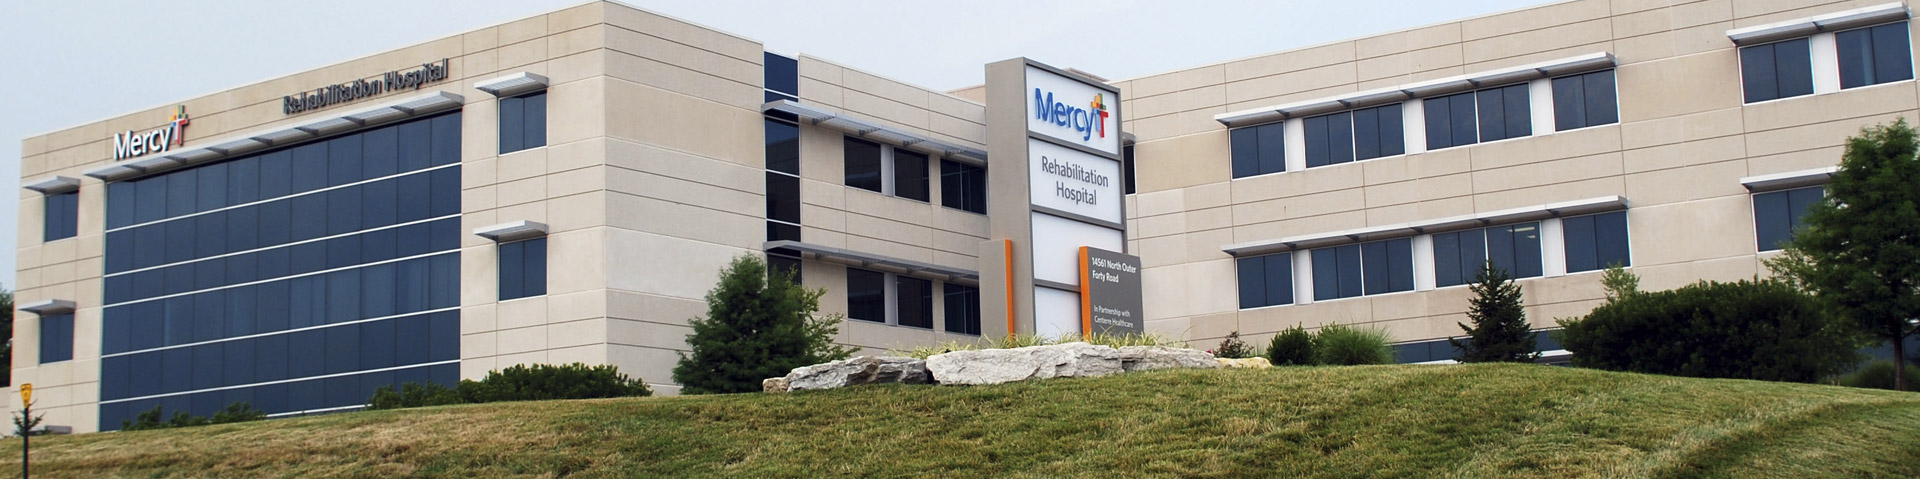 WEB_Hero_Location_Mercy-Rehabilitation-Hospital-St-Louis